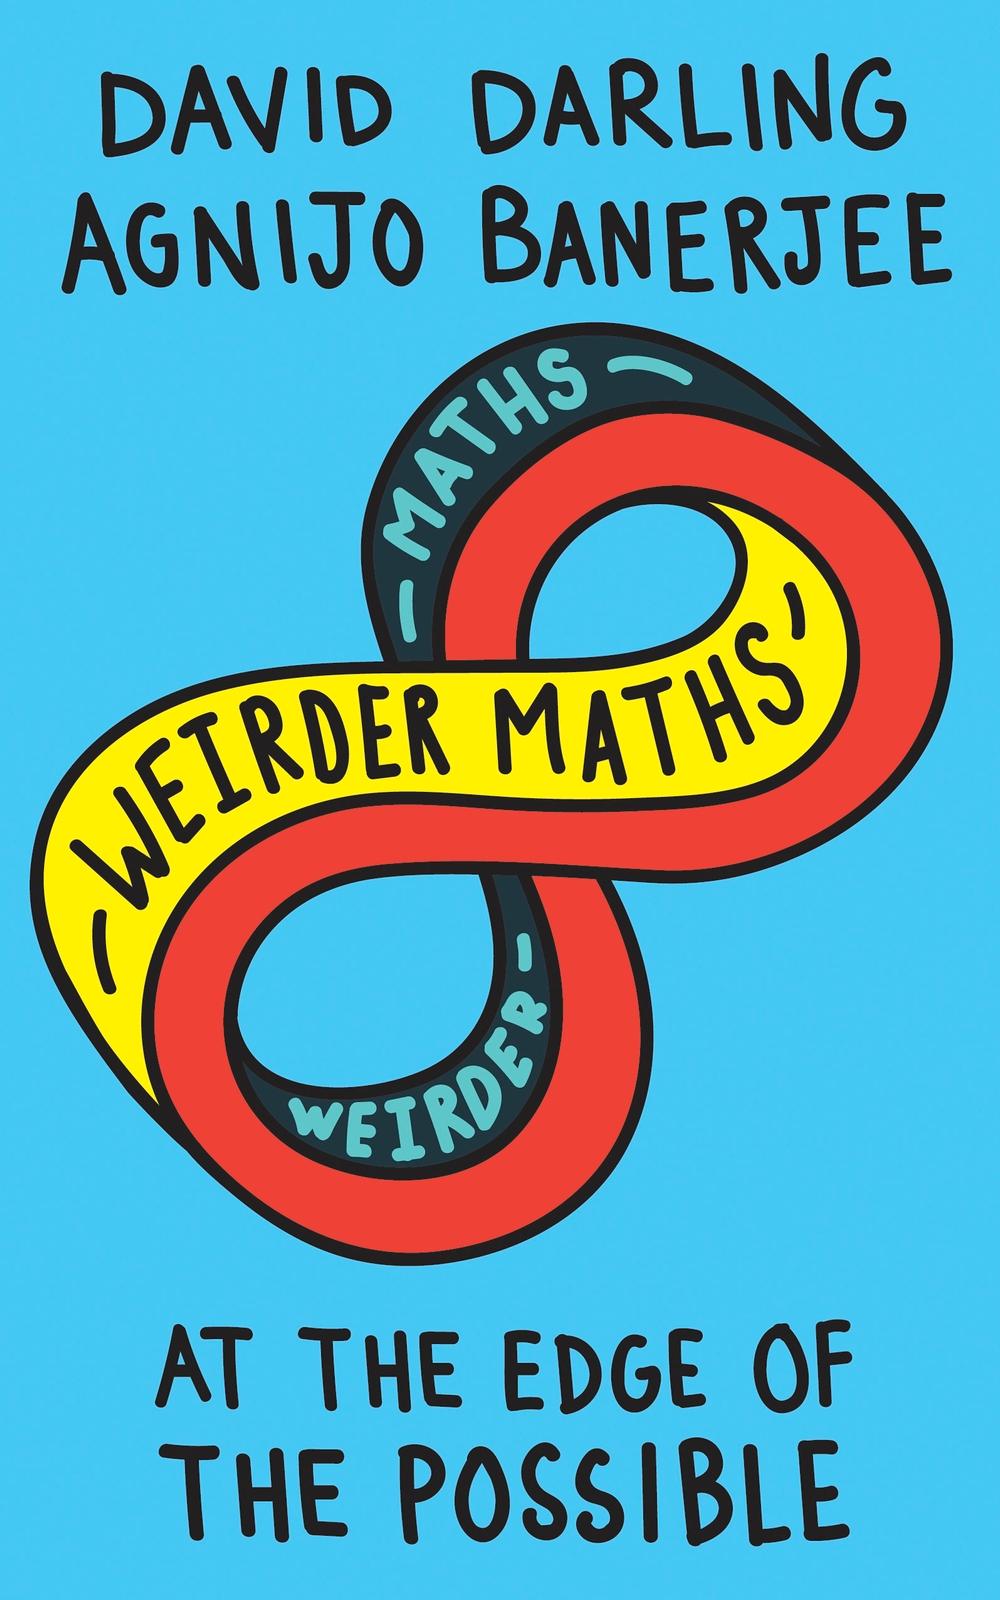 Weirder Maths - David Darling